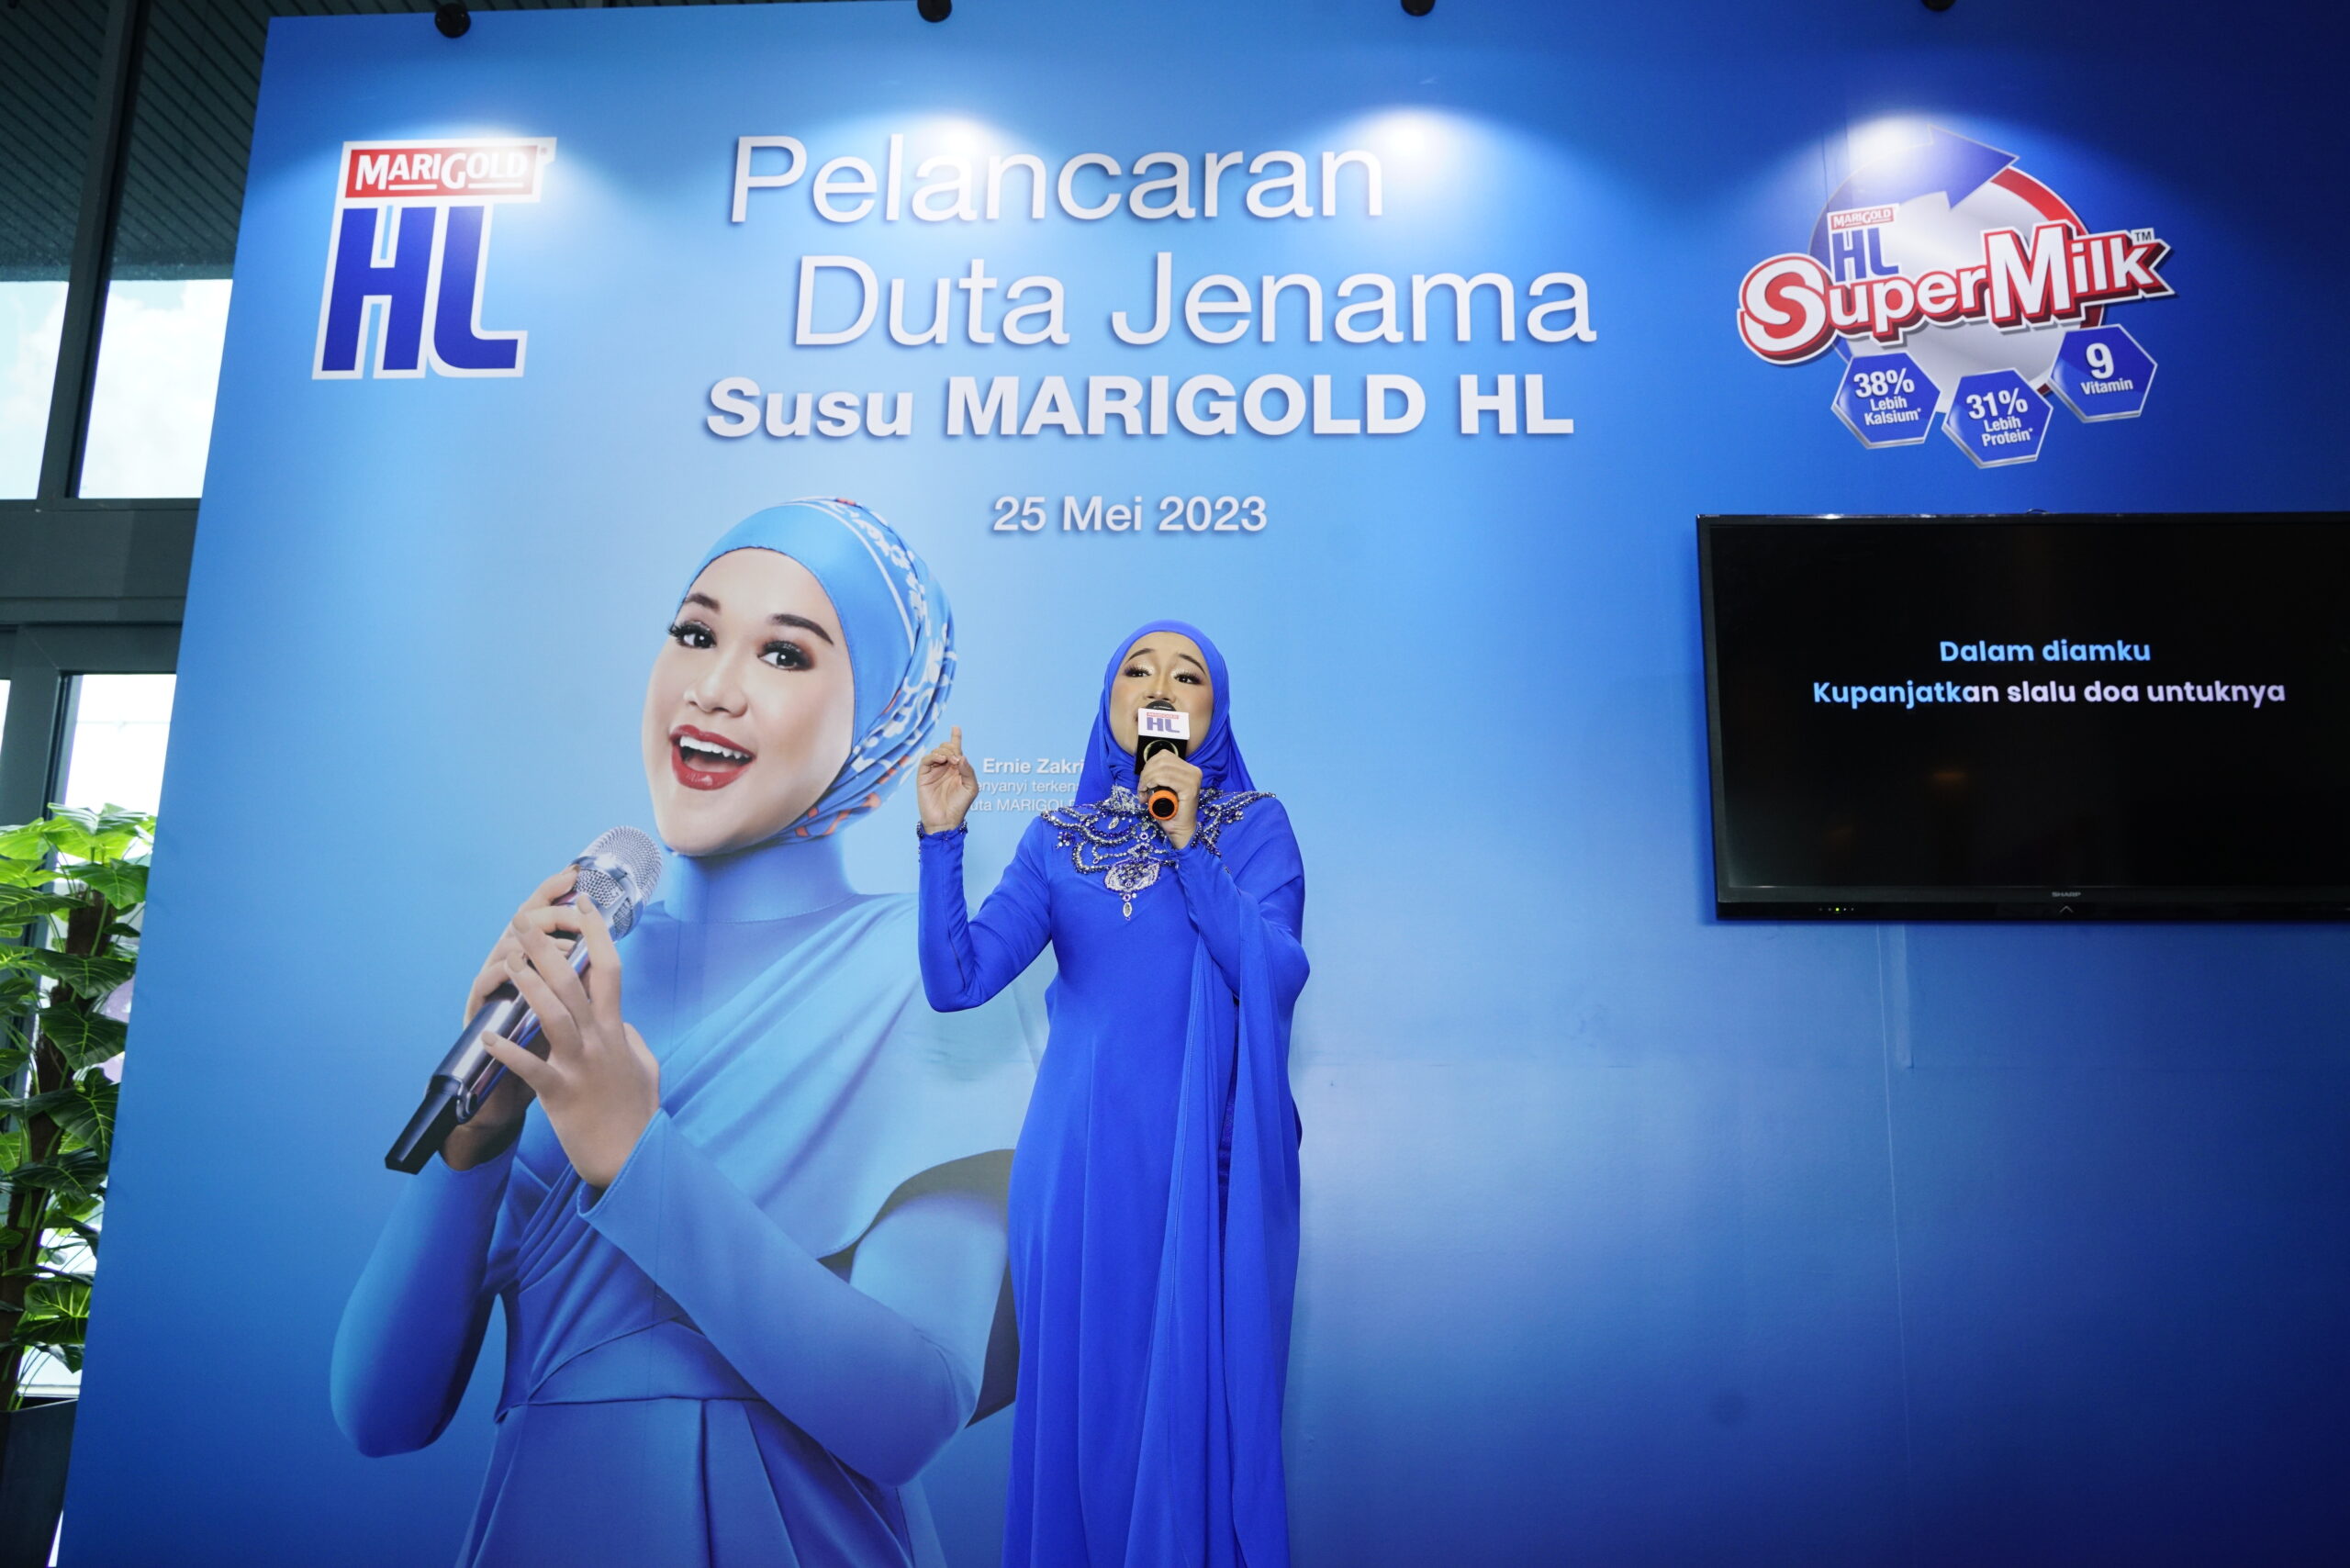 M'sia's beloved singer, ernie zakri, becomes marigold hl milk's brand ambassador for supermilk™ campaign | weirdkaya